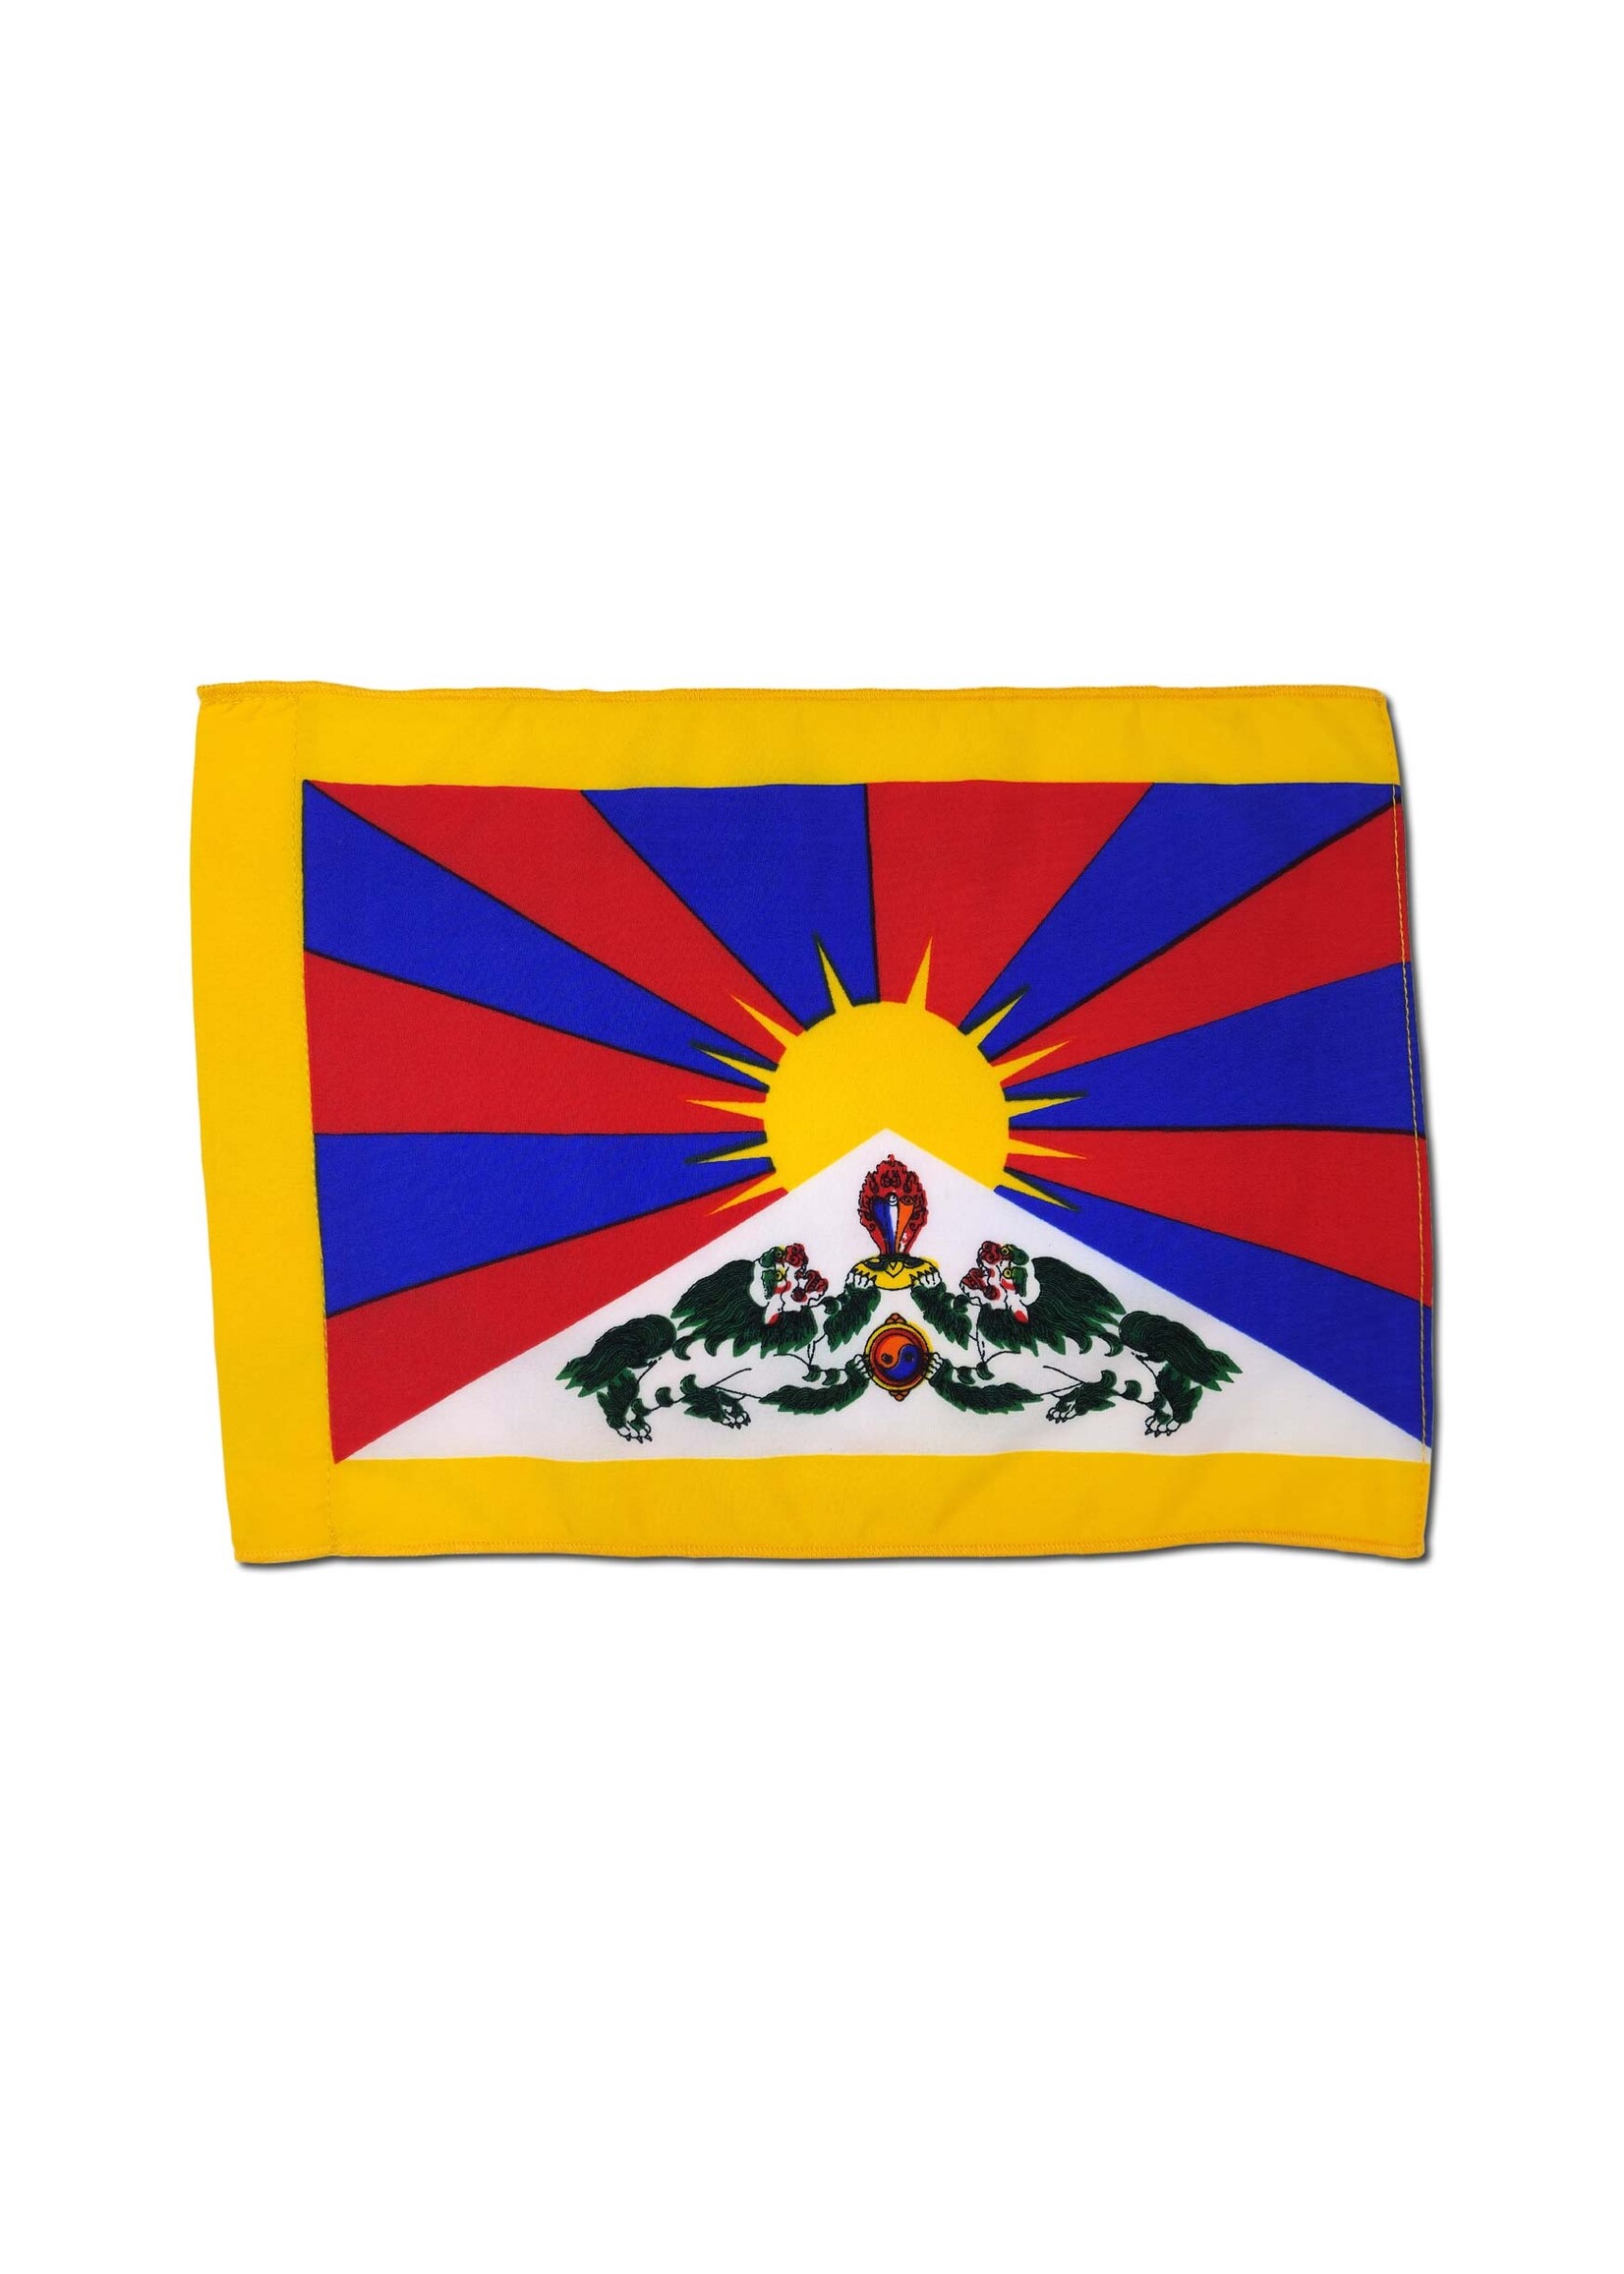 Tischfahne tibetische Nationalflagge